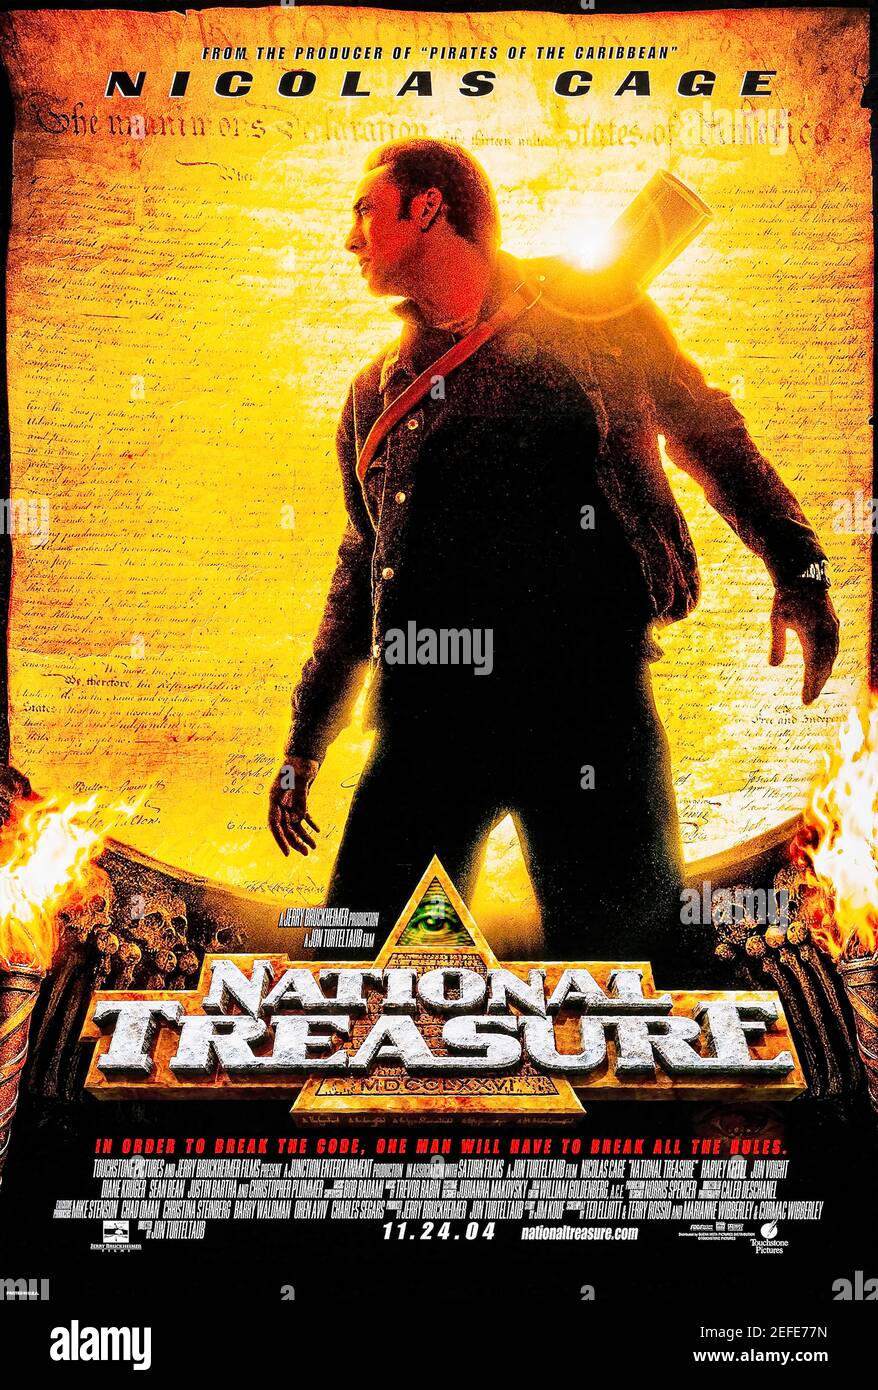 National Treasure (2004) diretto da Jon Turteltaub e interpretato da Nicolas Cage, Diane Kruger e Justin Bartha. Uno storico corre per trovare il leggendario tesoro dei Templari davanti a una squadra di mercenari. Foto Stock